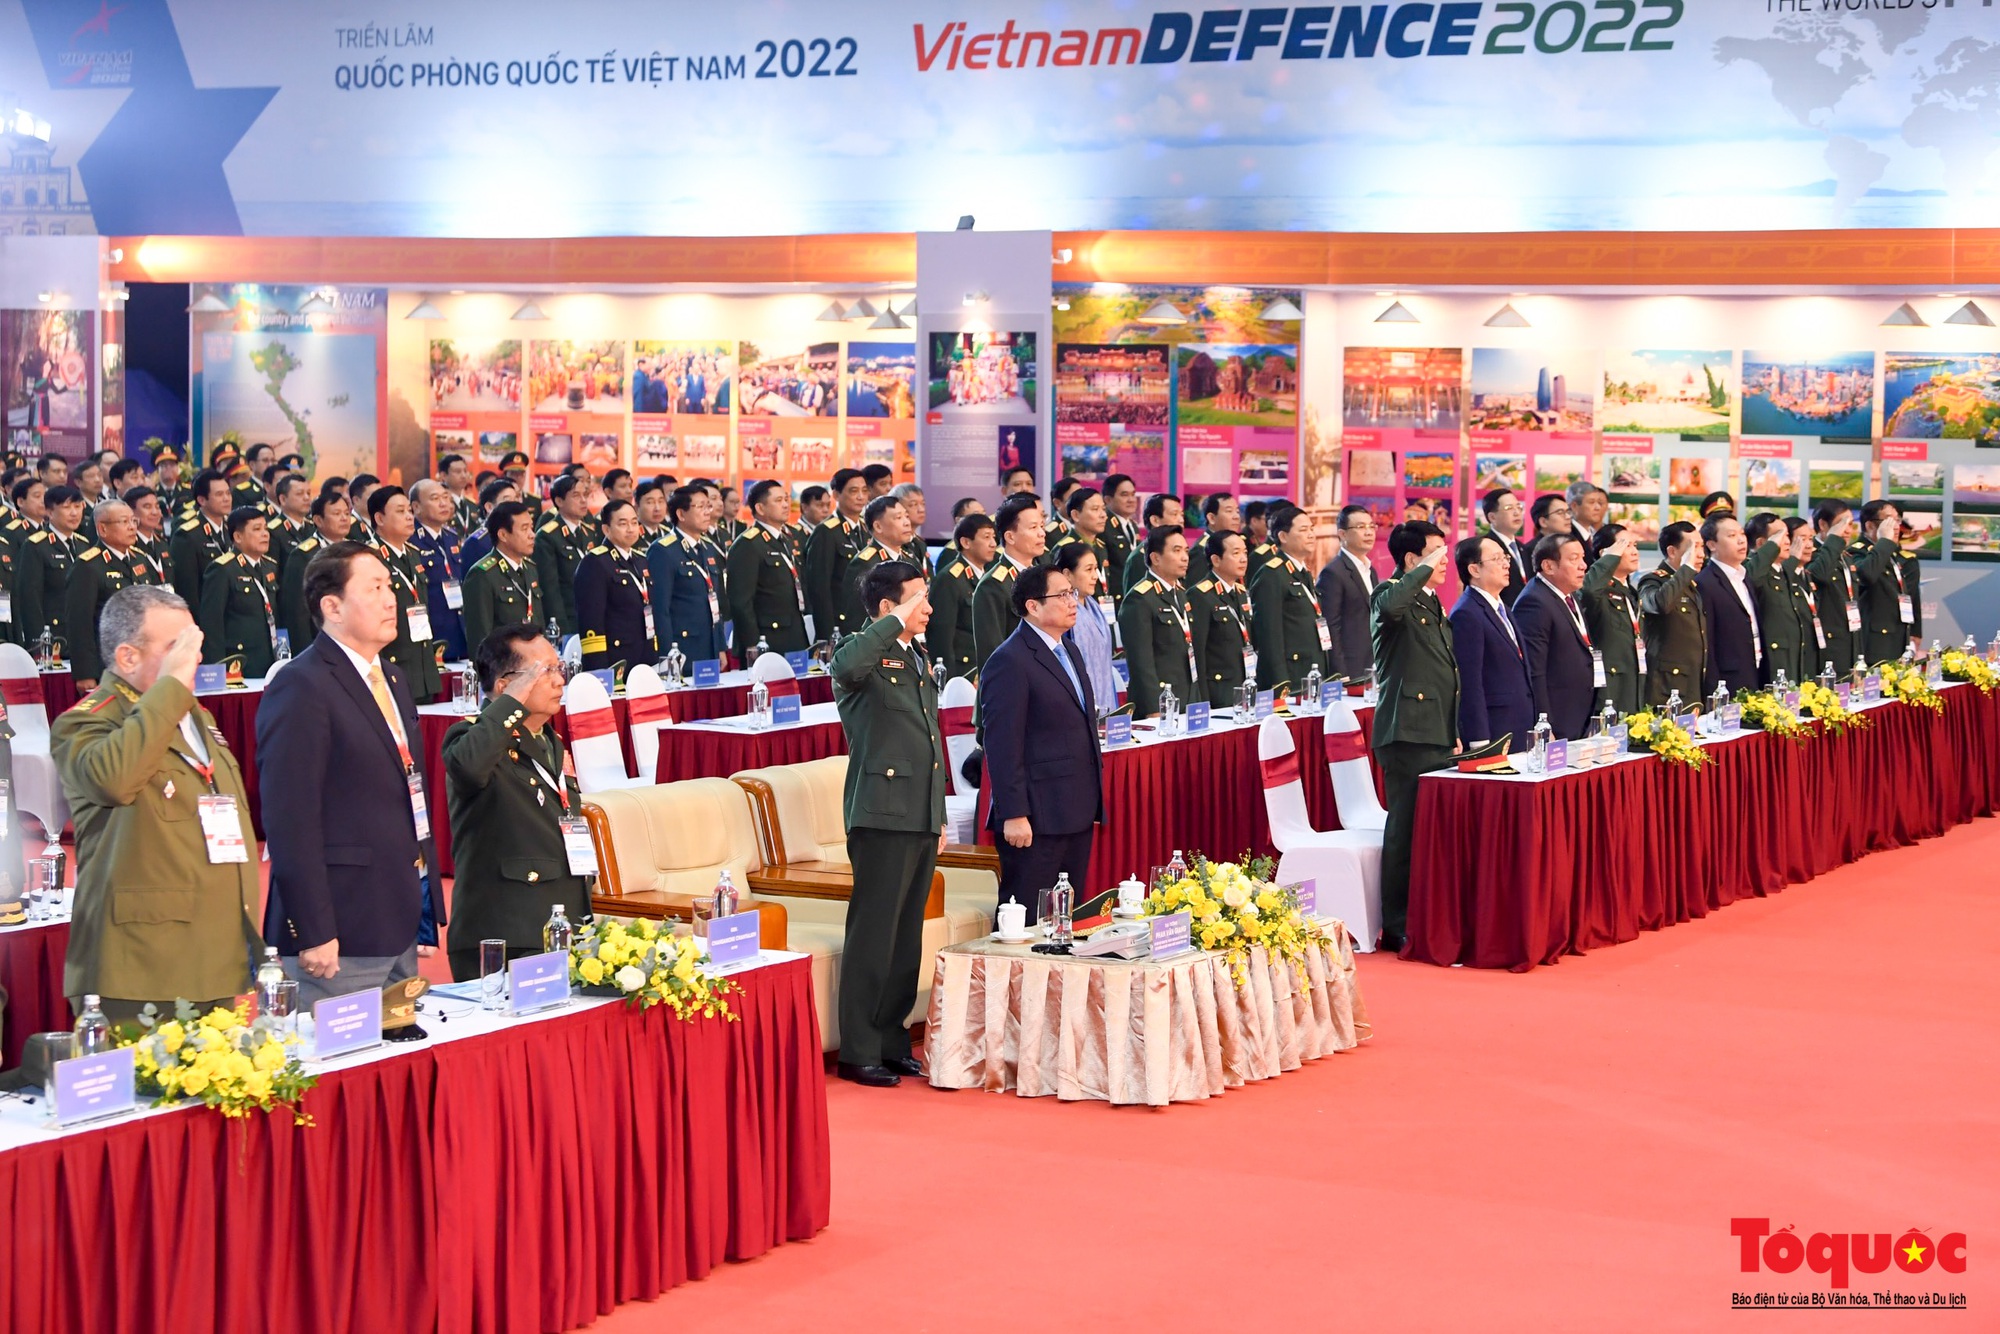 Hình ảnh khai mạc Triển lãm Quốc phòng quốc tế Việt Nam 2022 - Ảnh 4.